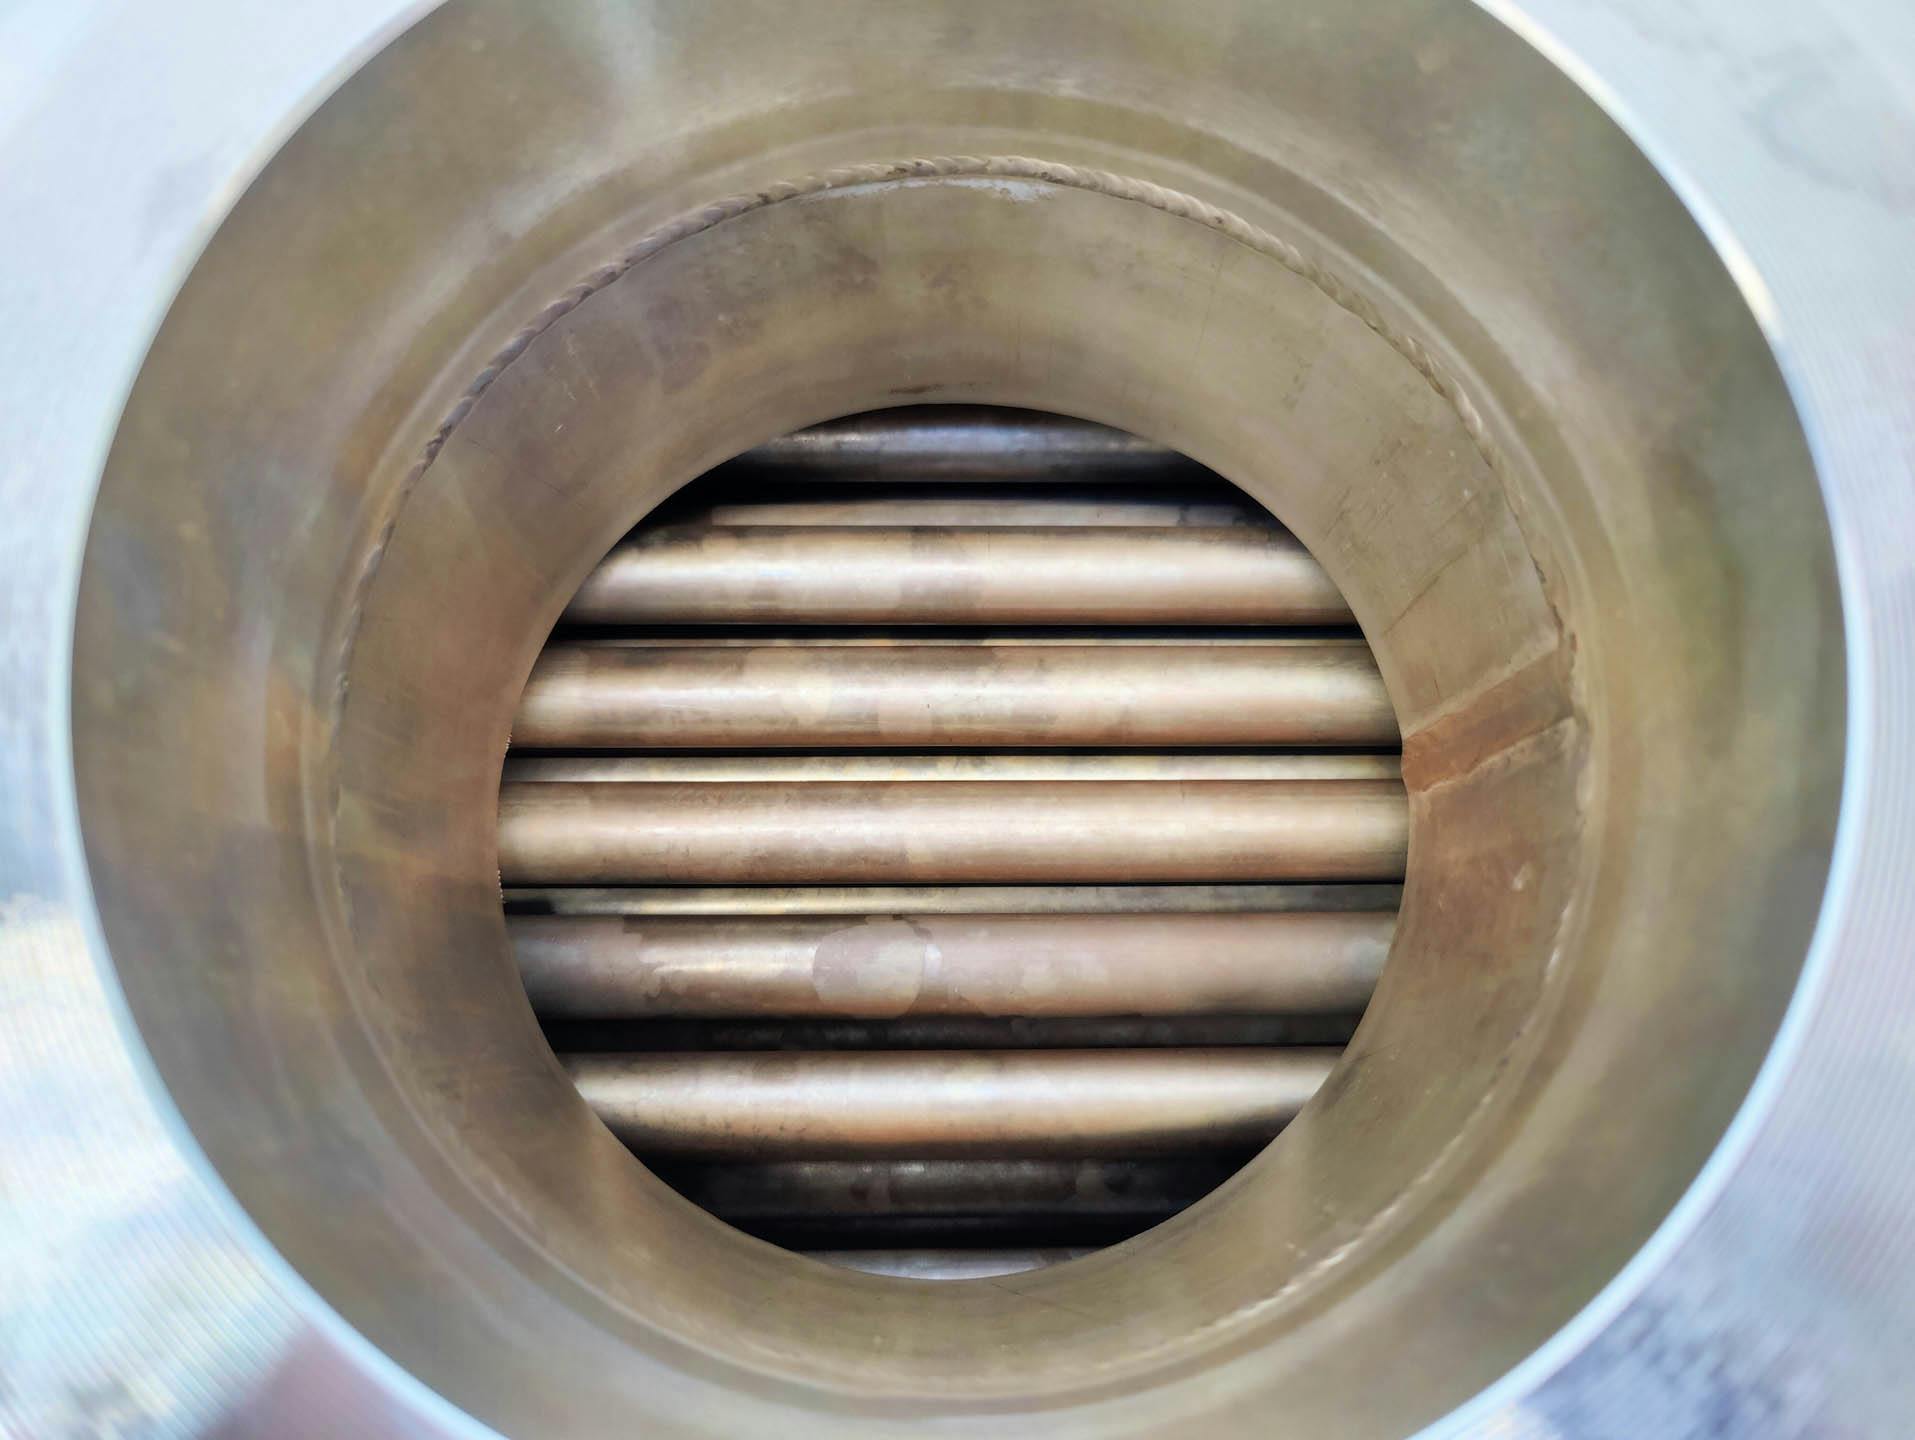 Kuehni - Shell and tube heat exchanger - image 4